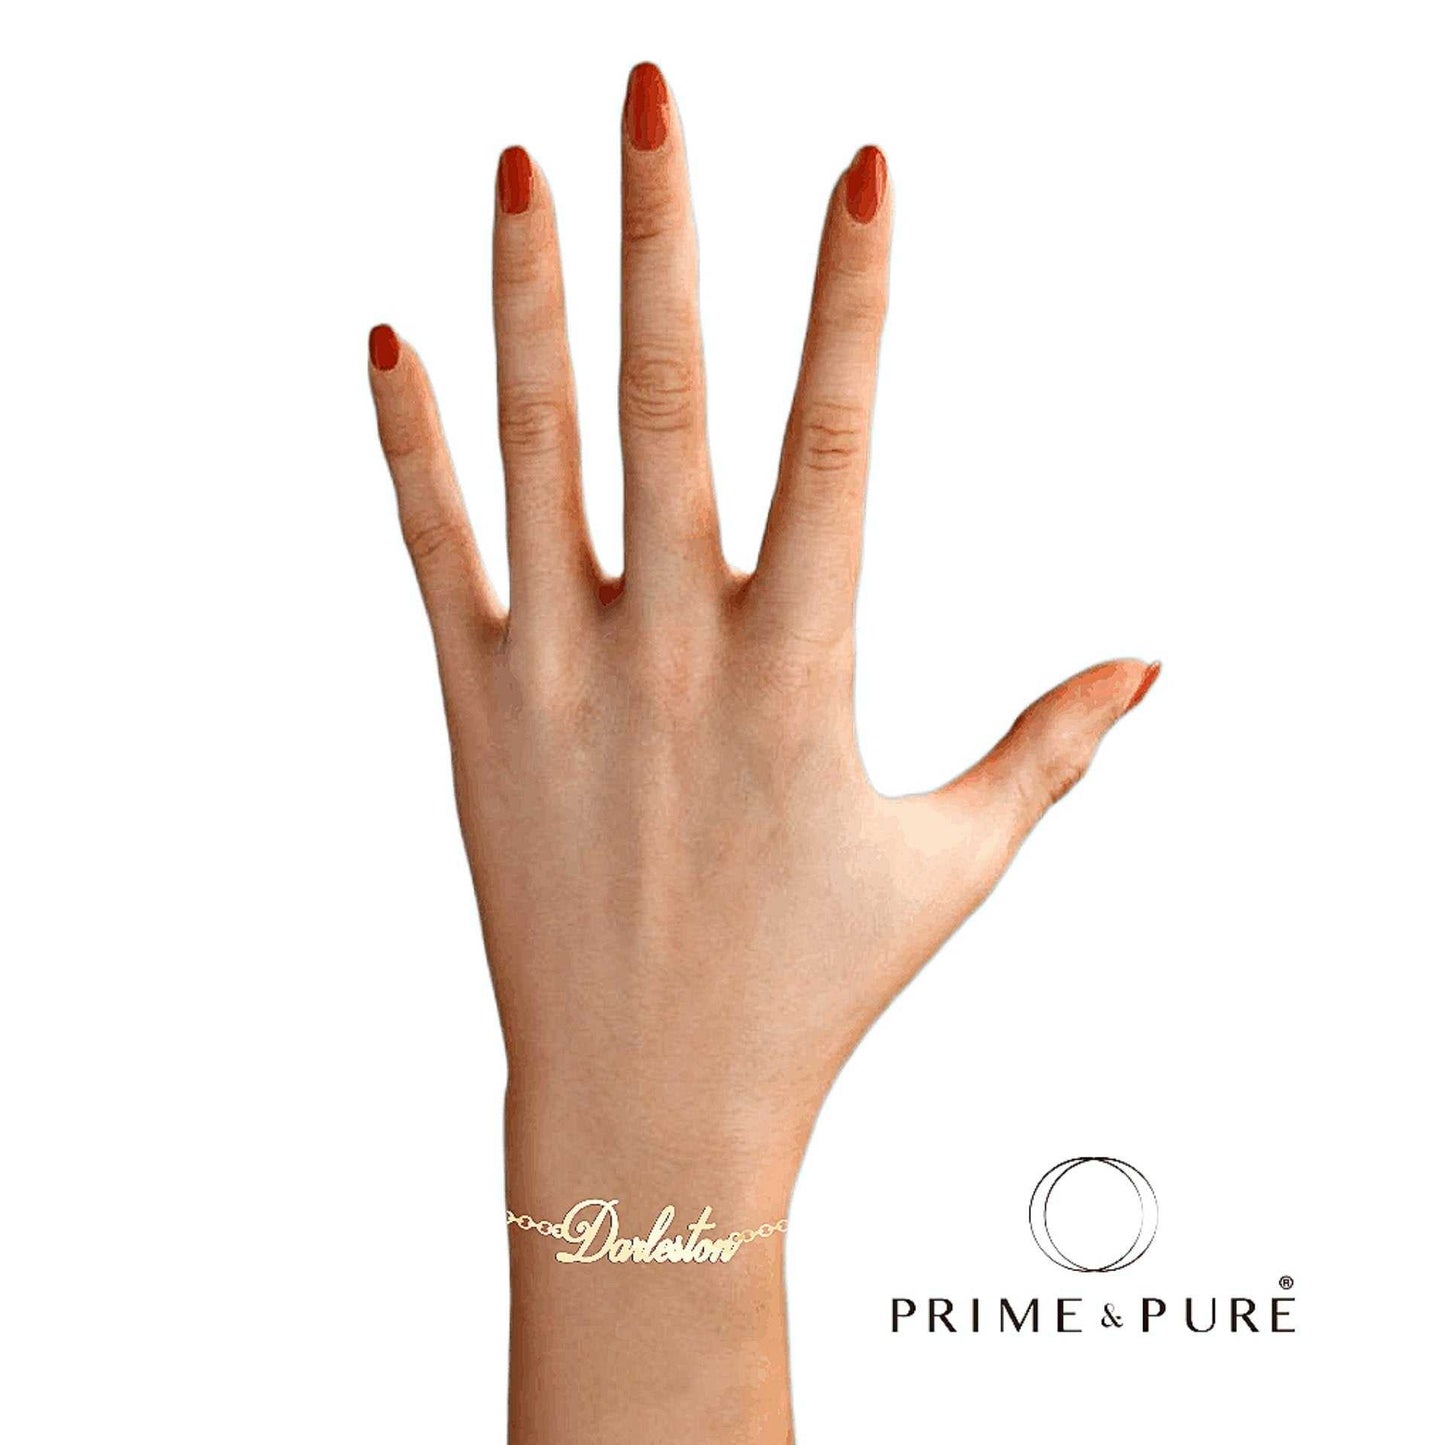 Darlen Name Bracelet - Prime & Pure